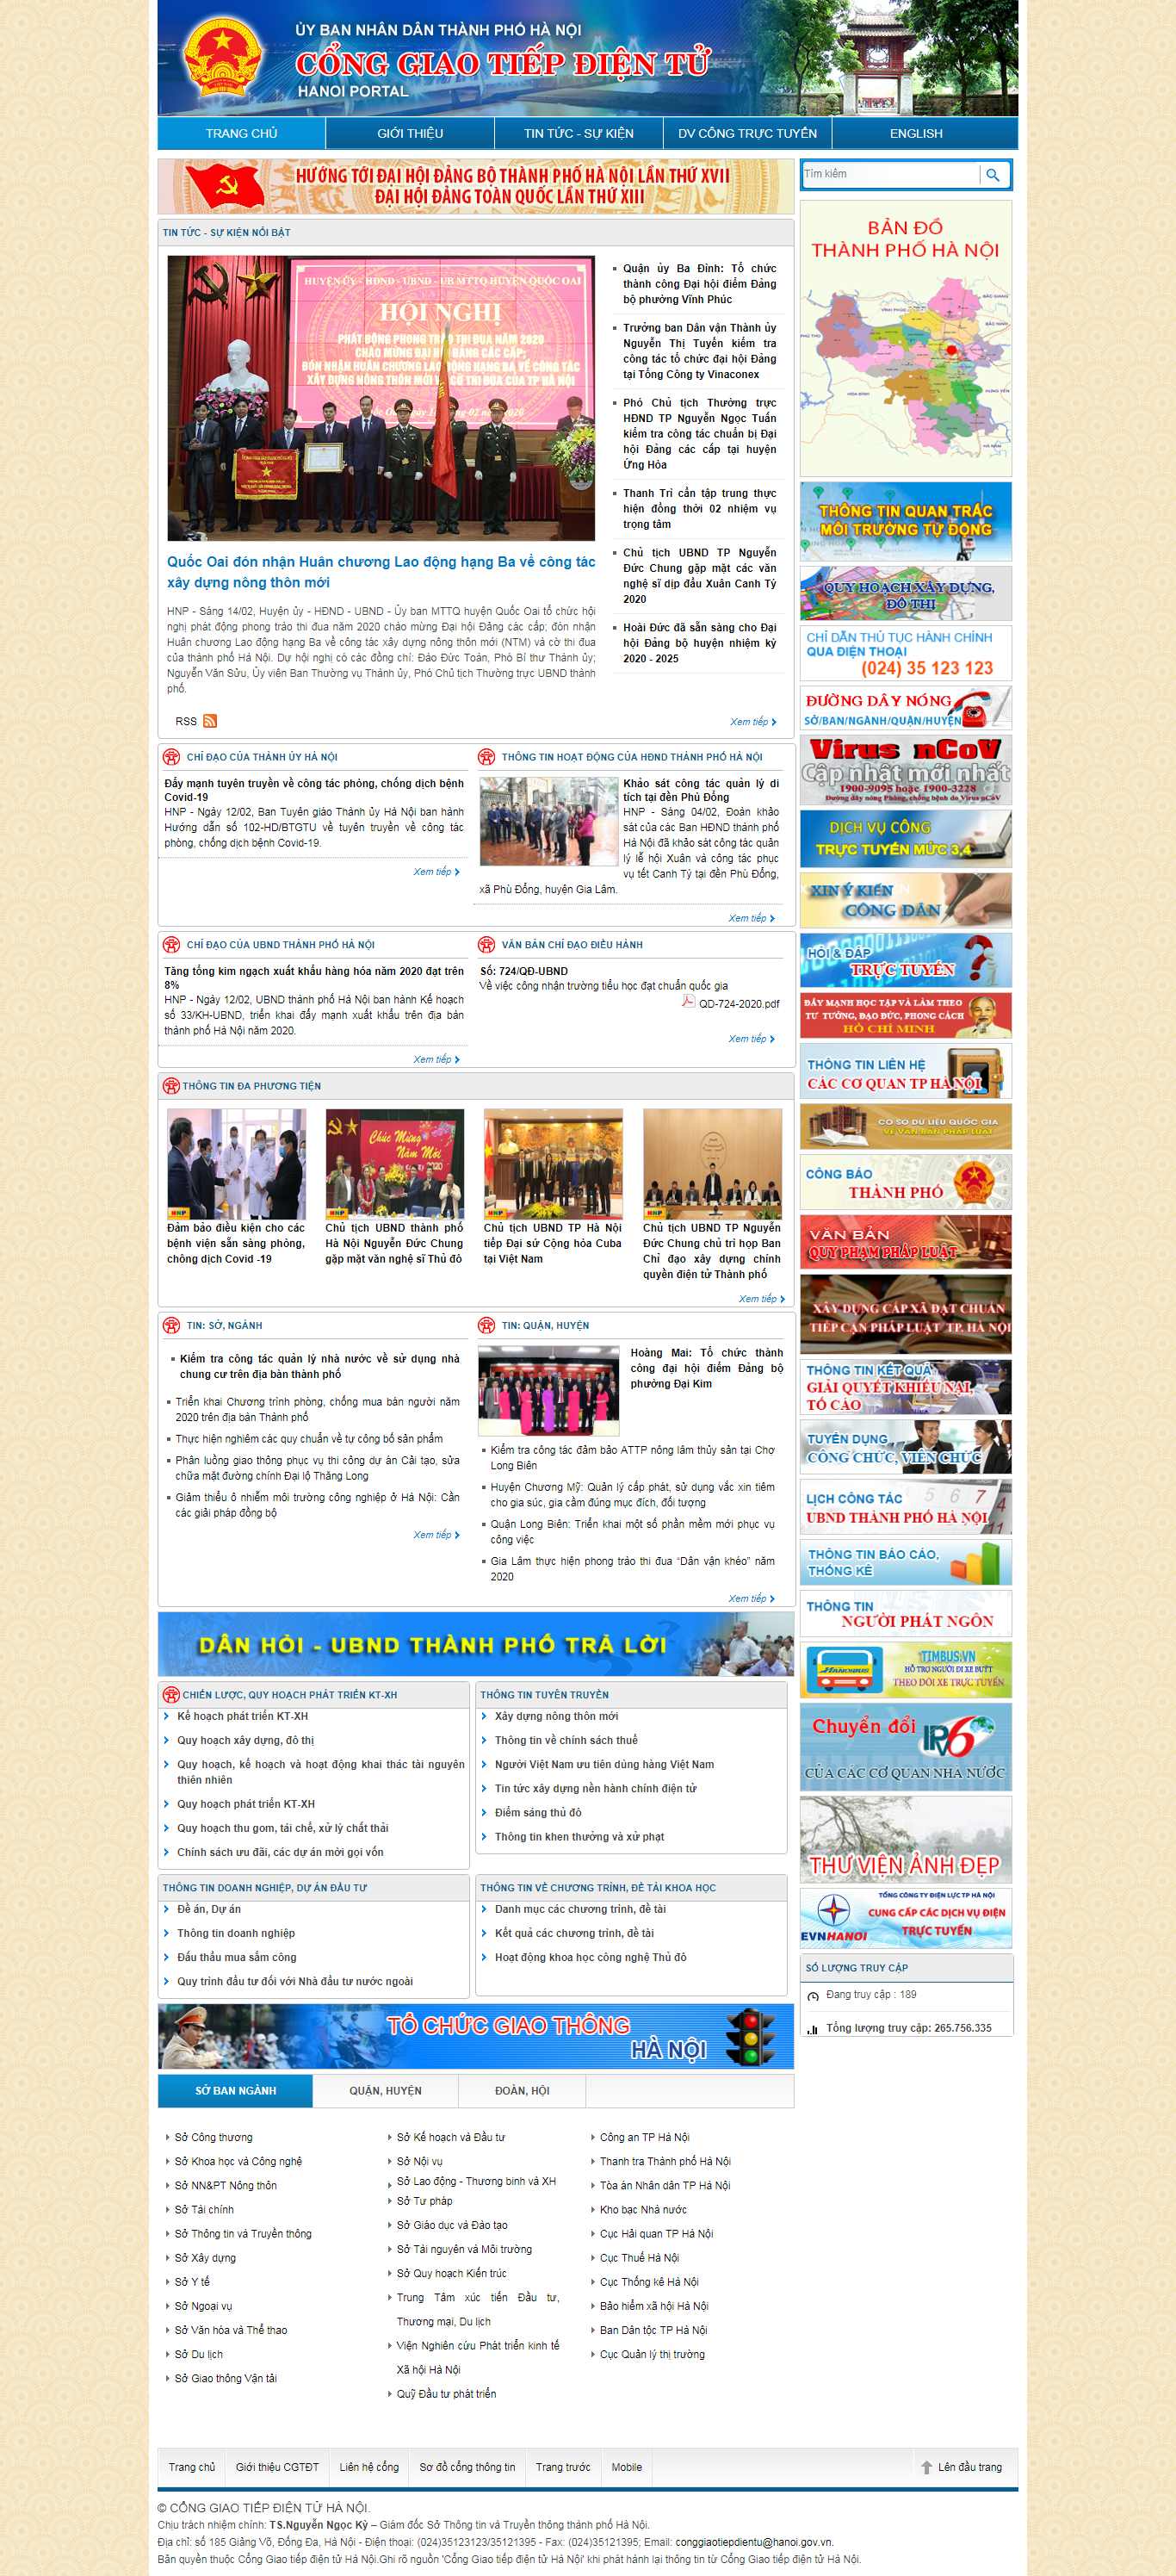 Thiết kế Website cổng thông tin - hanoi.gov.vn